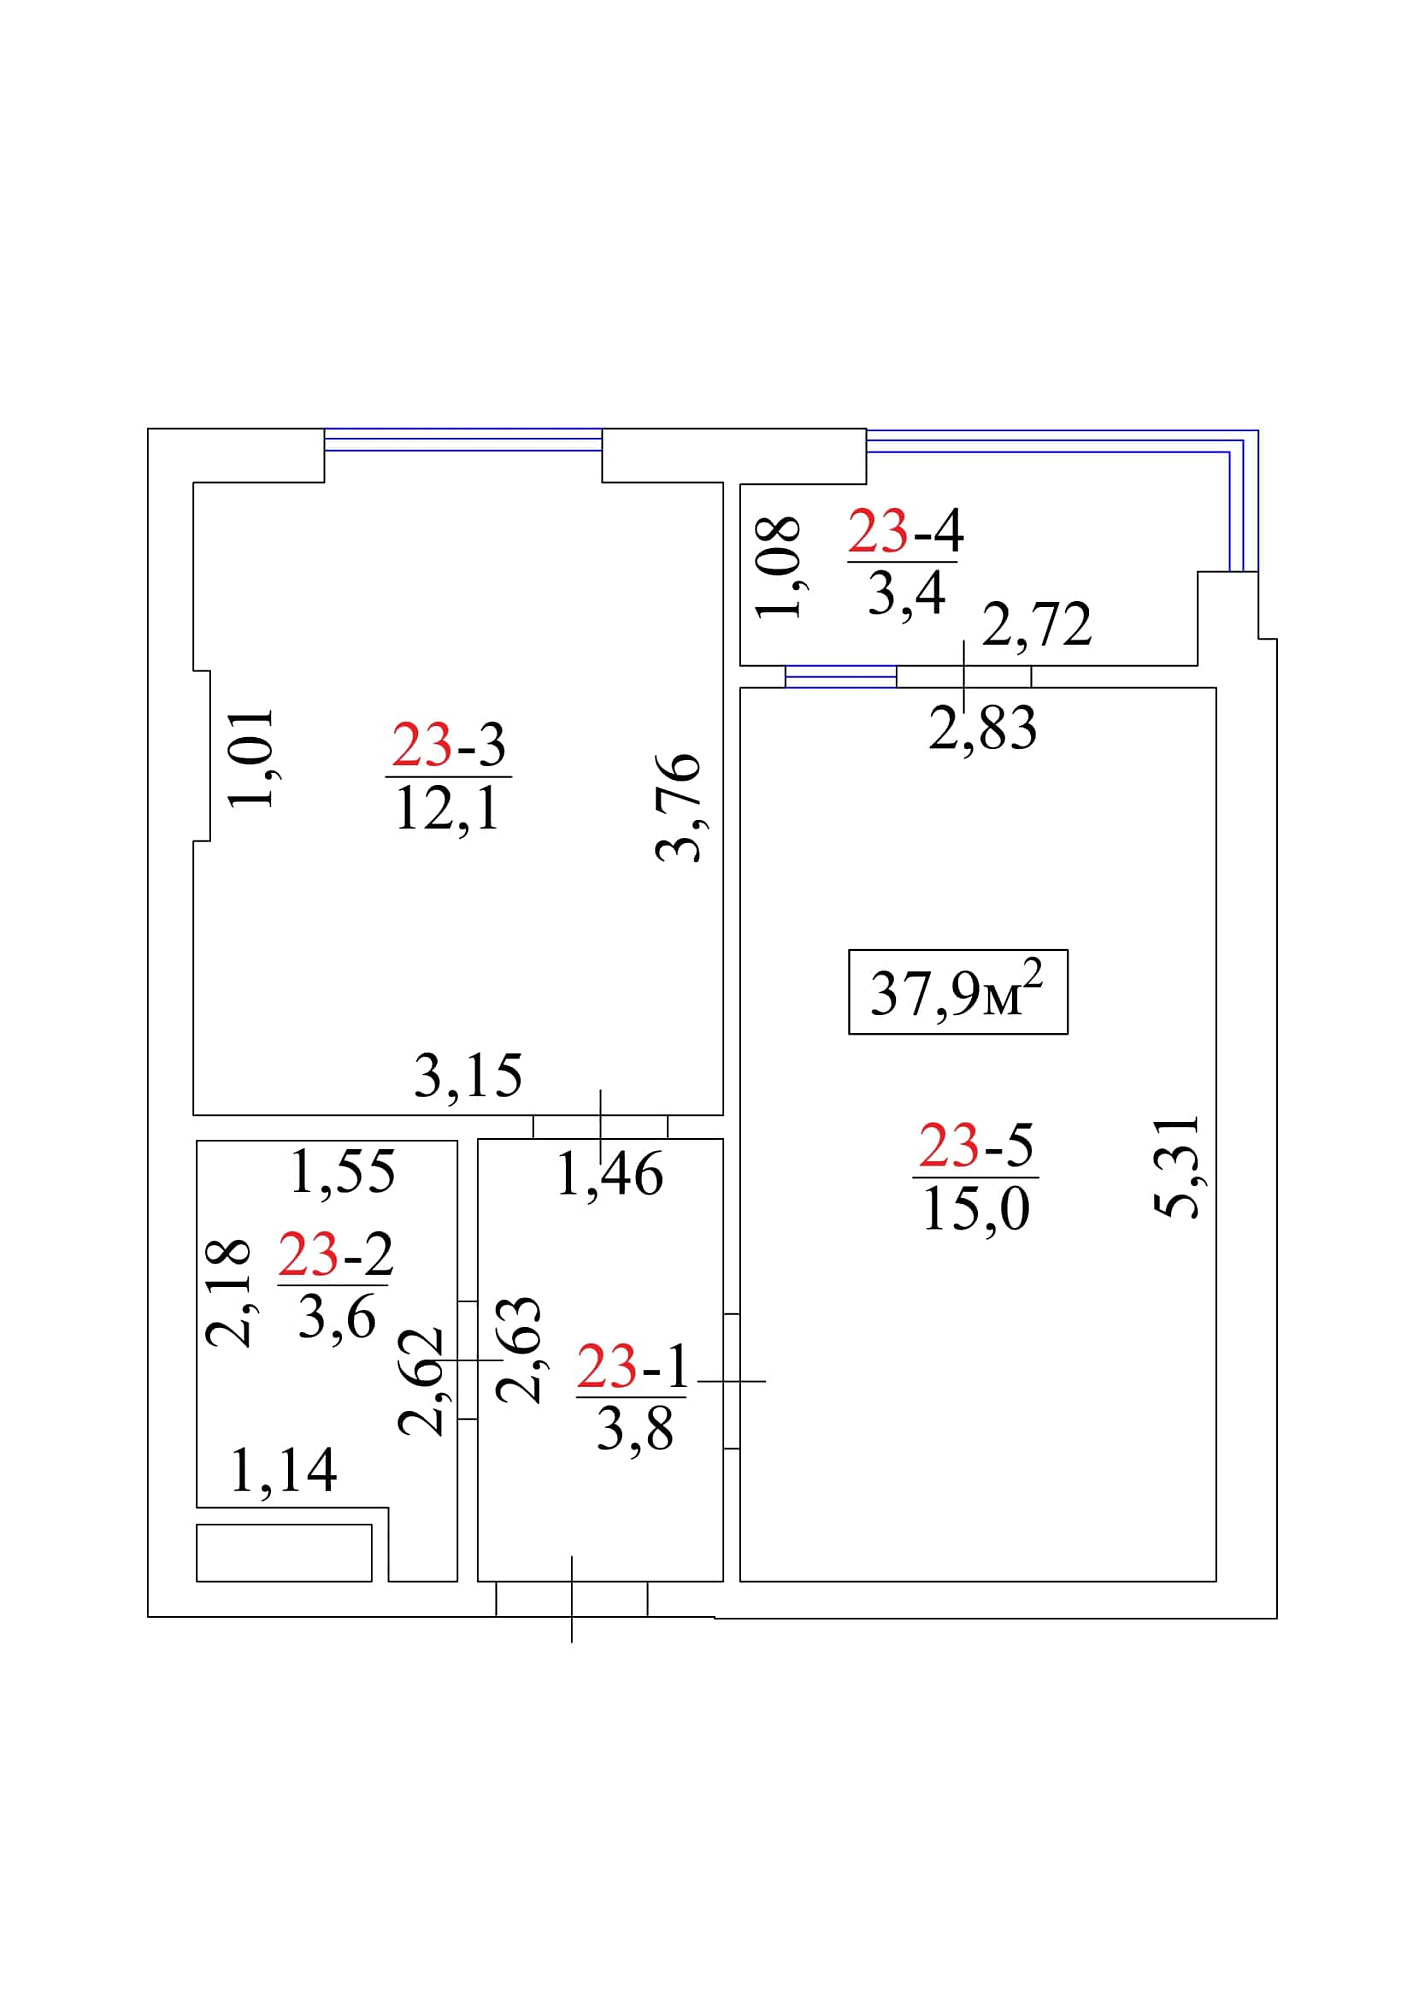 Планировка 1-к квартира площей 37.9м2, AB-01-03/0024а.